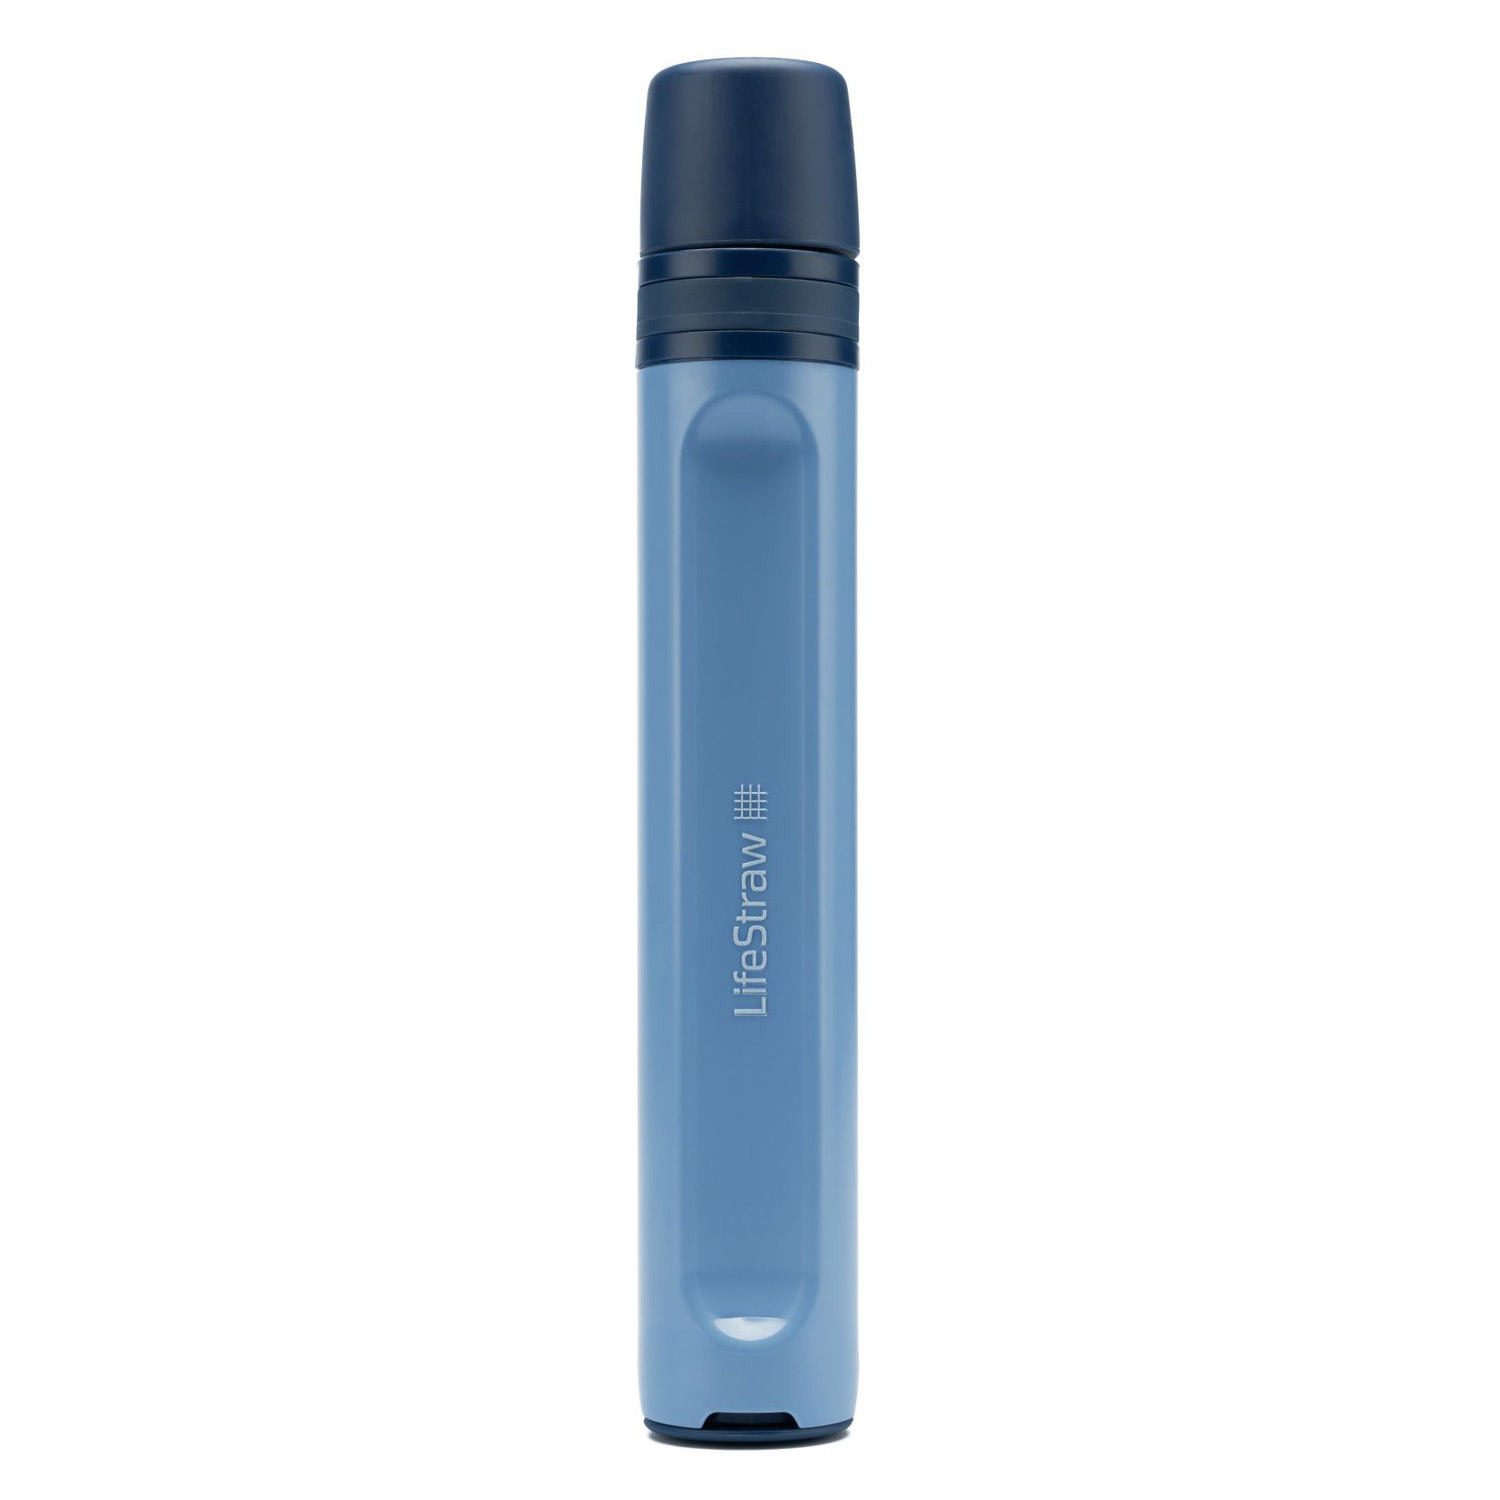 LifeStraw Peak Personal Blau - weiterentwickelter Strohhalm-Wasserfilter